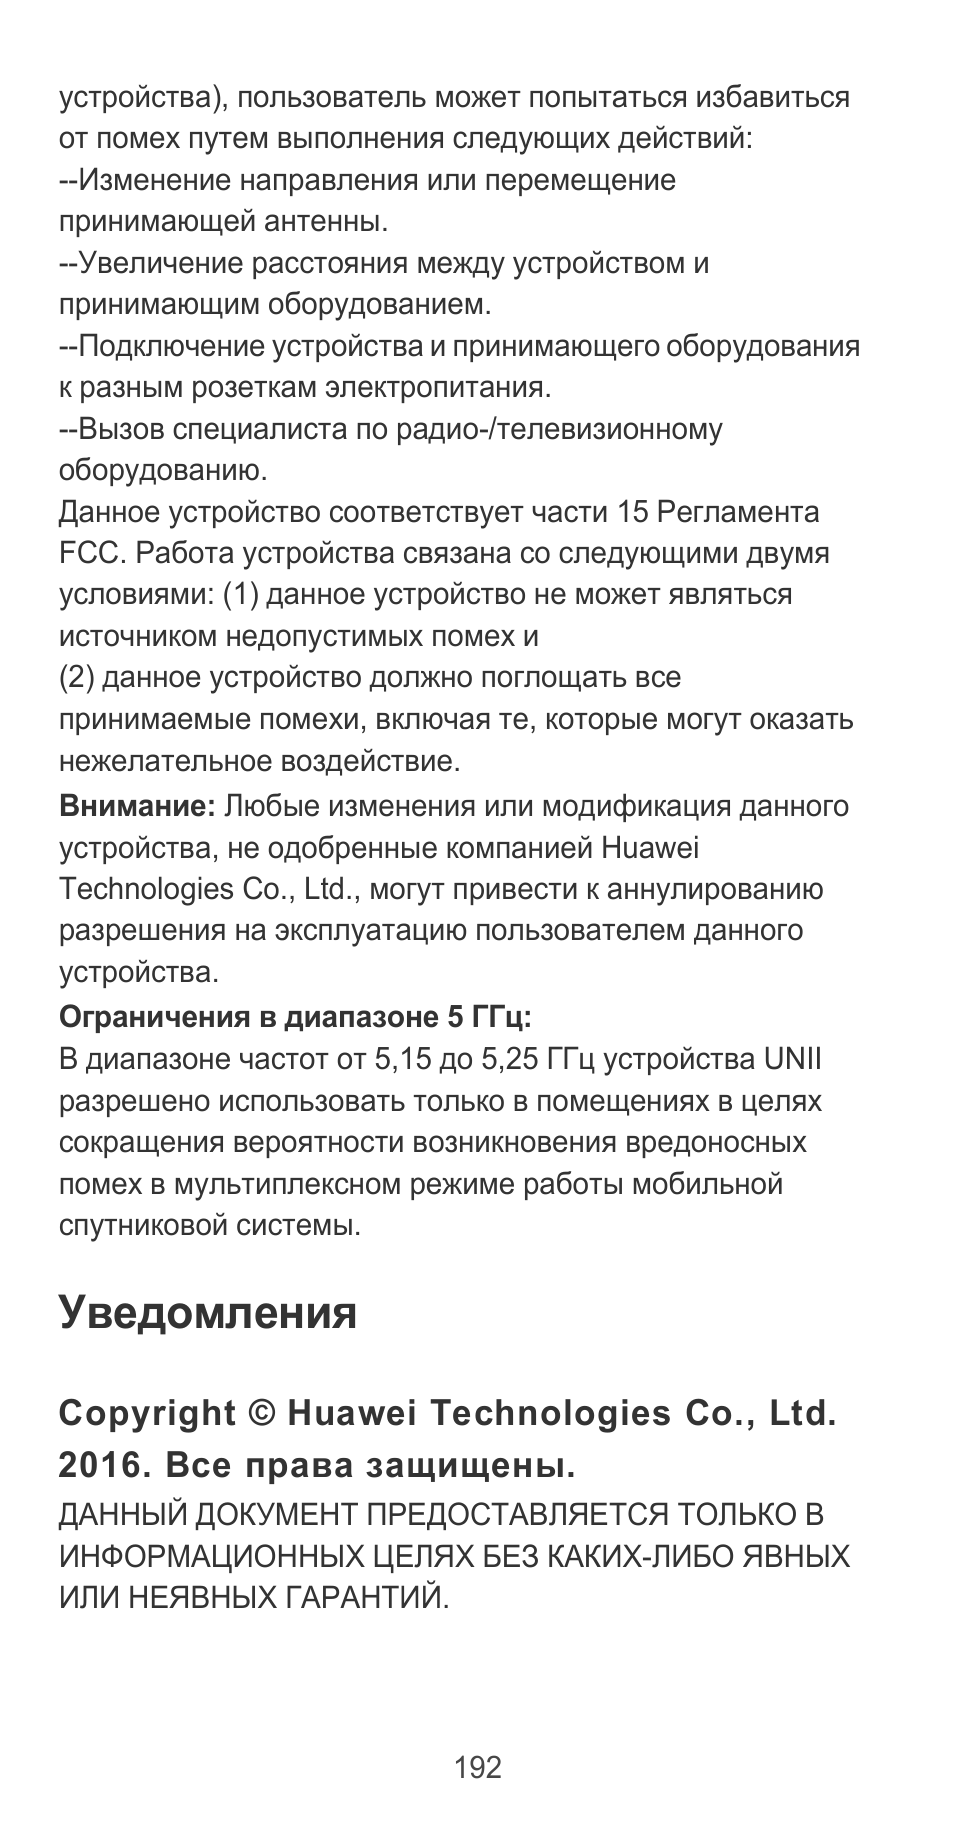 Уведомления | Huawei P9 User Manual | Page 196 / 198